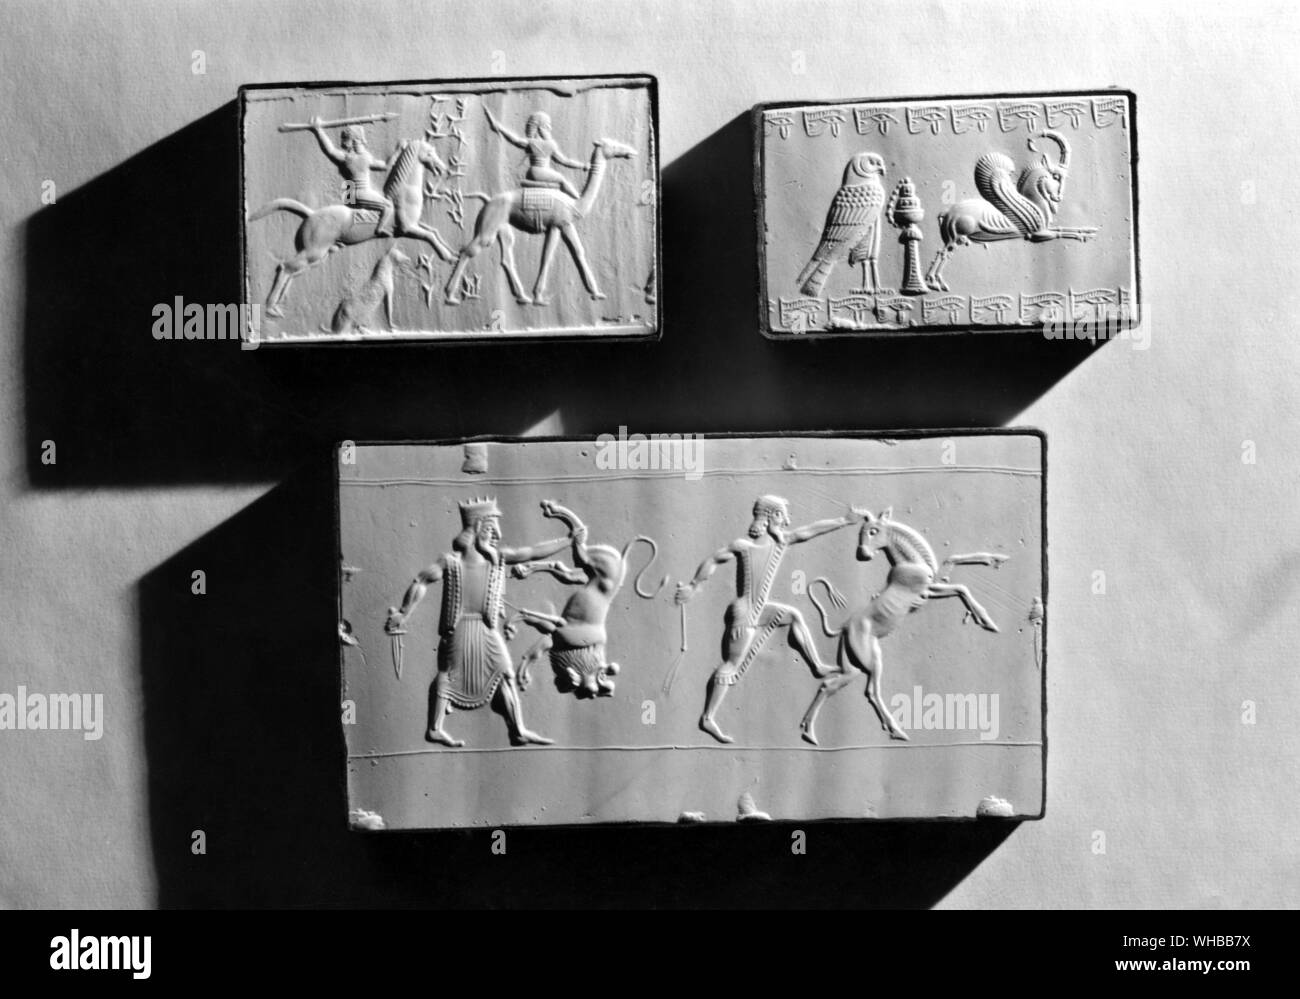 Esculturas en relieve de Oriente Medio : superior izquierdo - Sello de Ninurta ah iddin ( hijo de Bel napishtimma NeoBabylonian ) , 6ª - 5to siglo A.C., un hombre de caballería atacando a un árabe con una lanza . bajar - Royal hunt , Perisan 6ª - 5ª siglo A.C. , uno de los Reyes Archaemenid aparece sosteniendo un león por una pata trasera , otro hombre atrapa un toro por la guerra . Estos son antiguos temas de Asiria y Babilonia simboliza el rey triunfando sobre enemigos Foto de stock